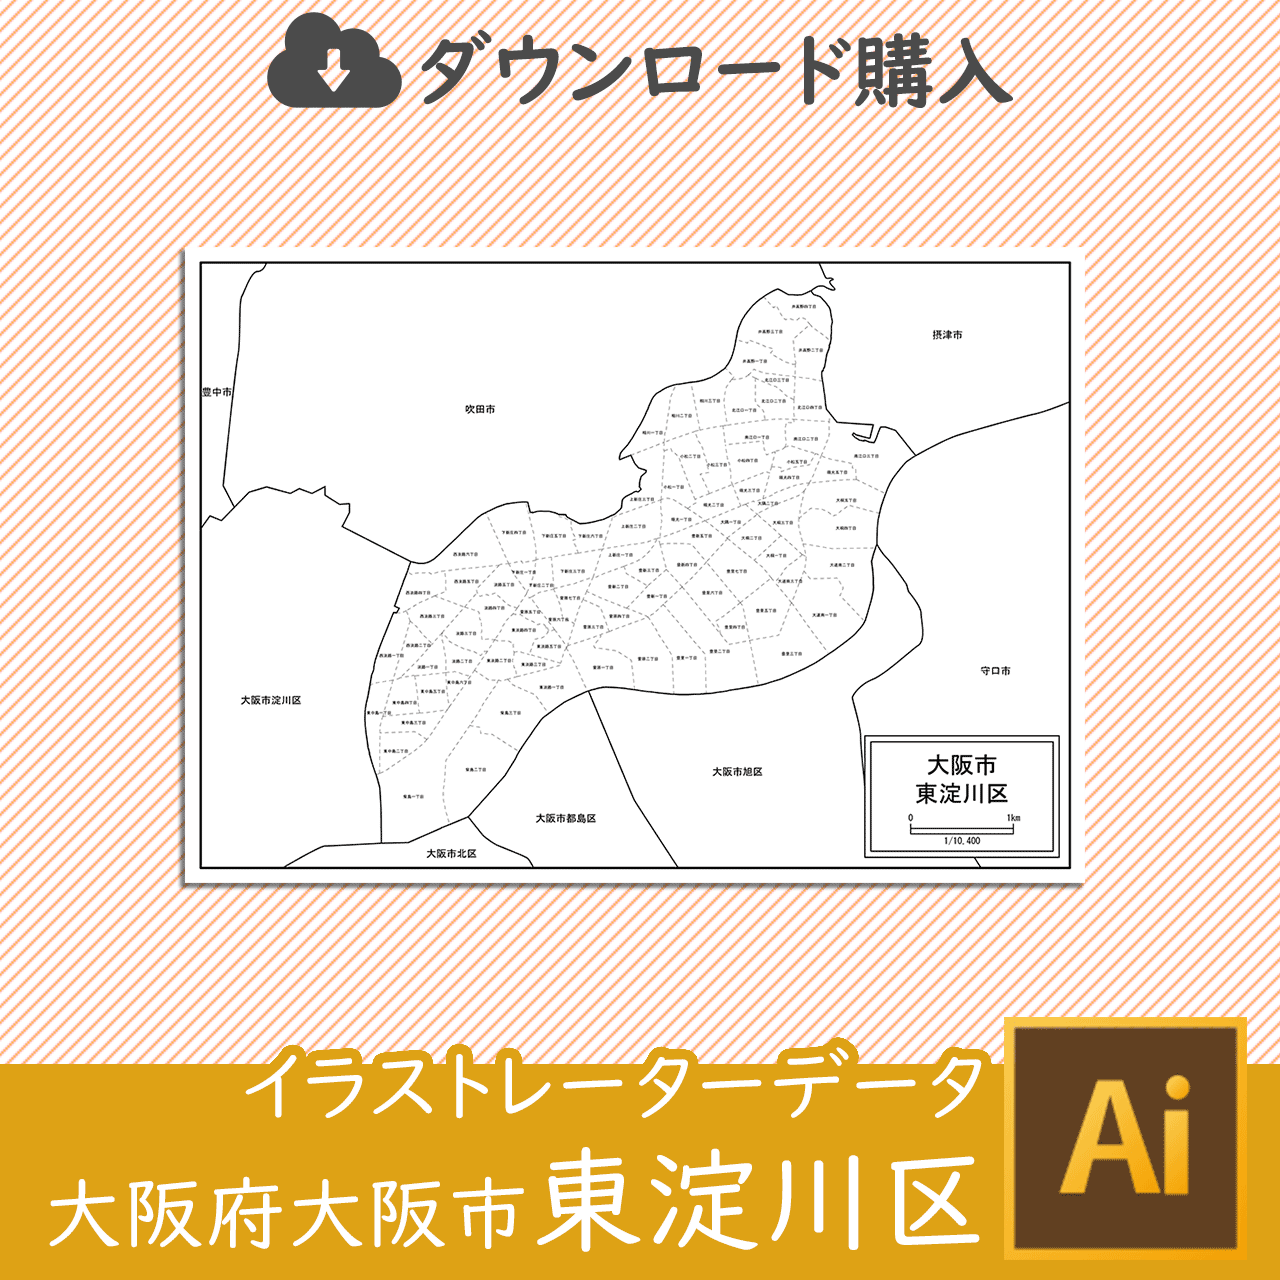 大阪市東淀川区の白地図のサムネイル画像